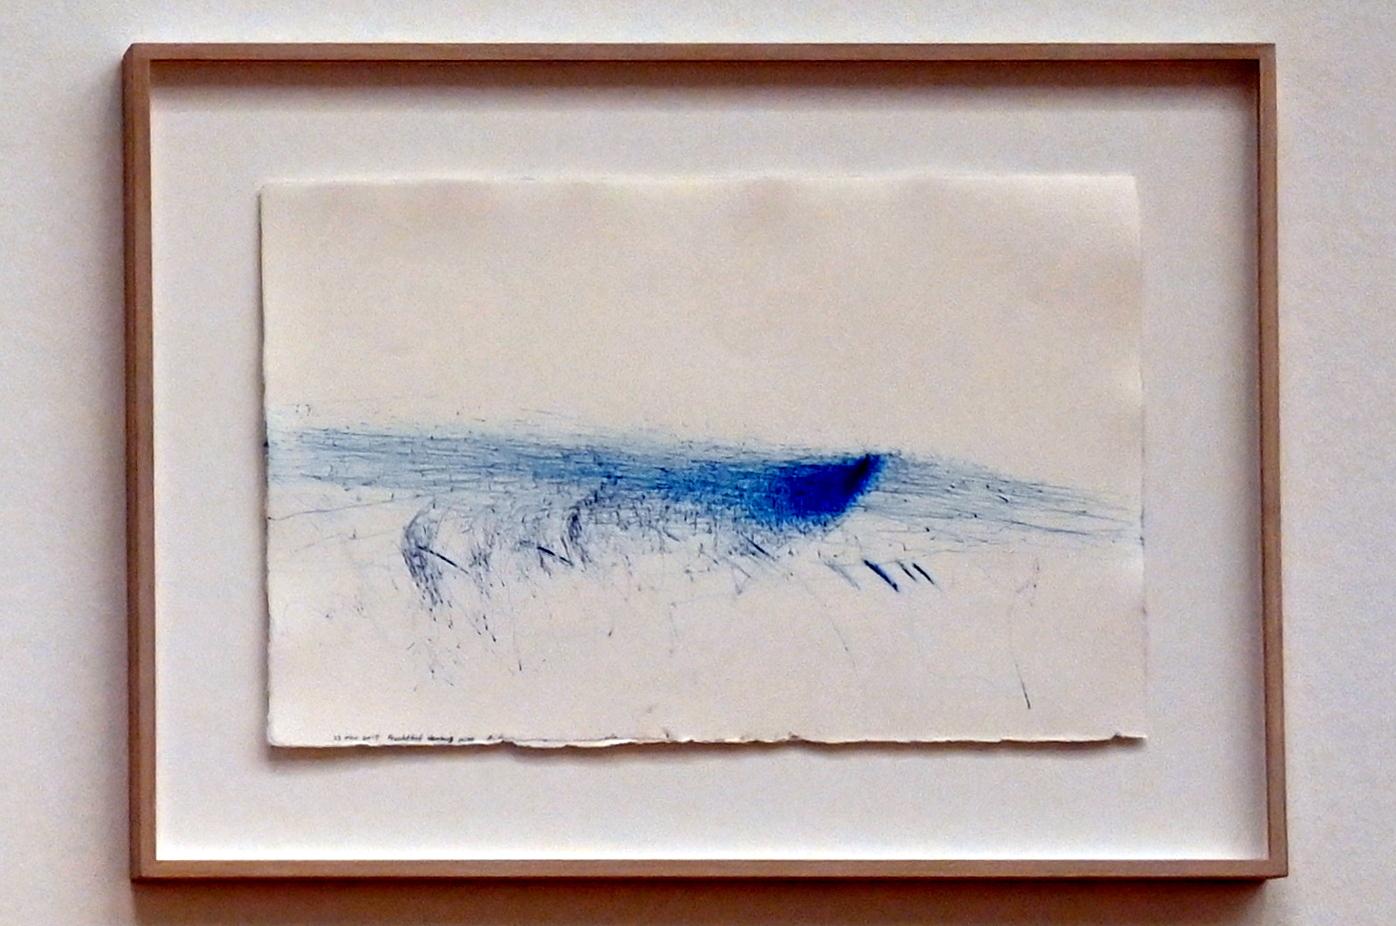 Rikuo Ueda (1997–2022), Wind, 23. Mar. 2015, Fruchthof, Hamburg 10:00, Bonn, Kunstmuseum, Ausstellung "Welt in der Schwebe" vom 24.02. - 19.06.2022, Saal 6, 2015, Bild 1/2